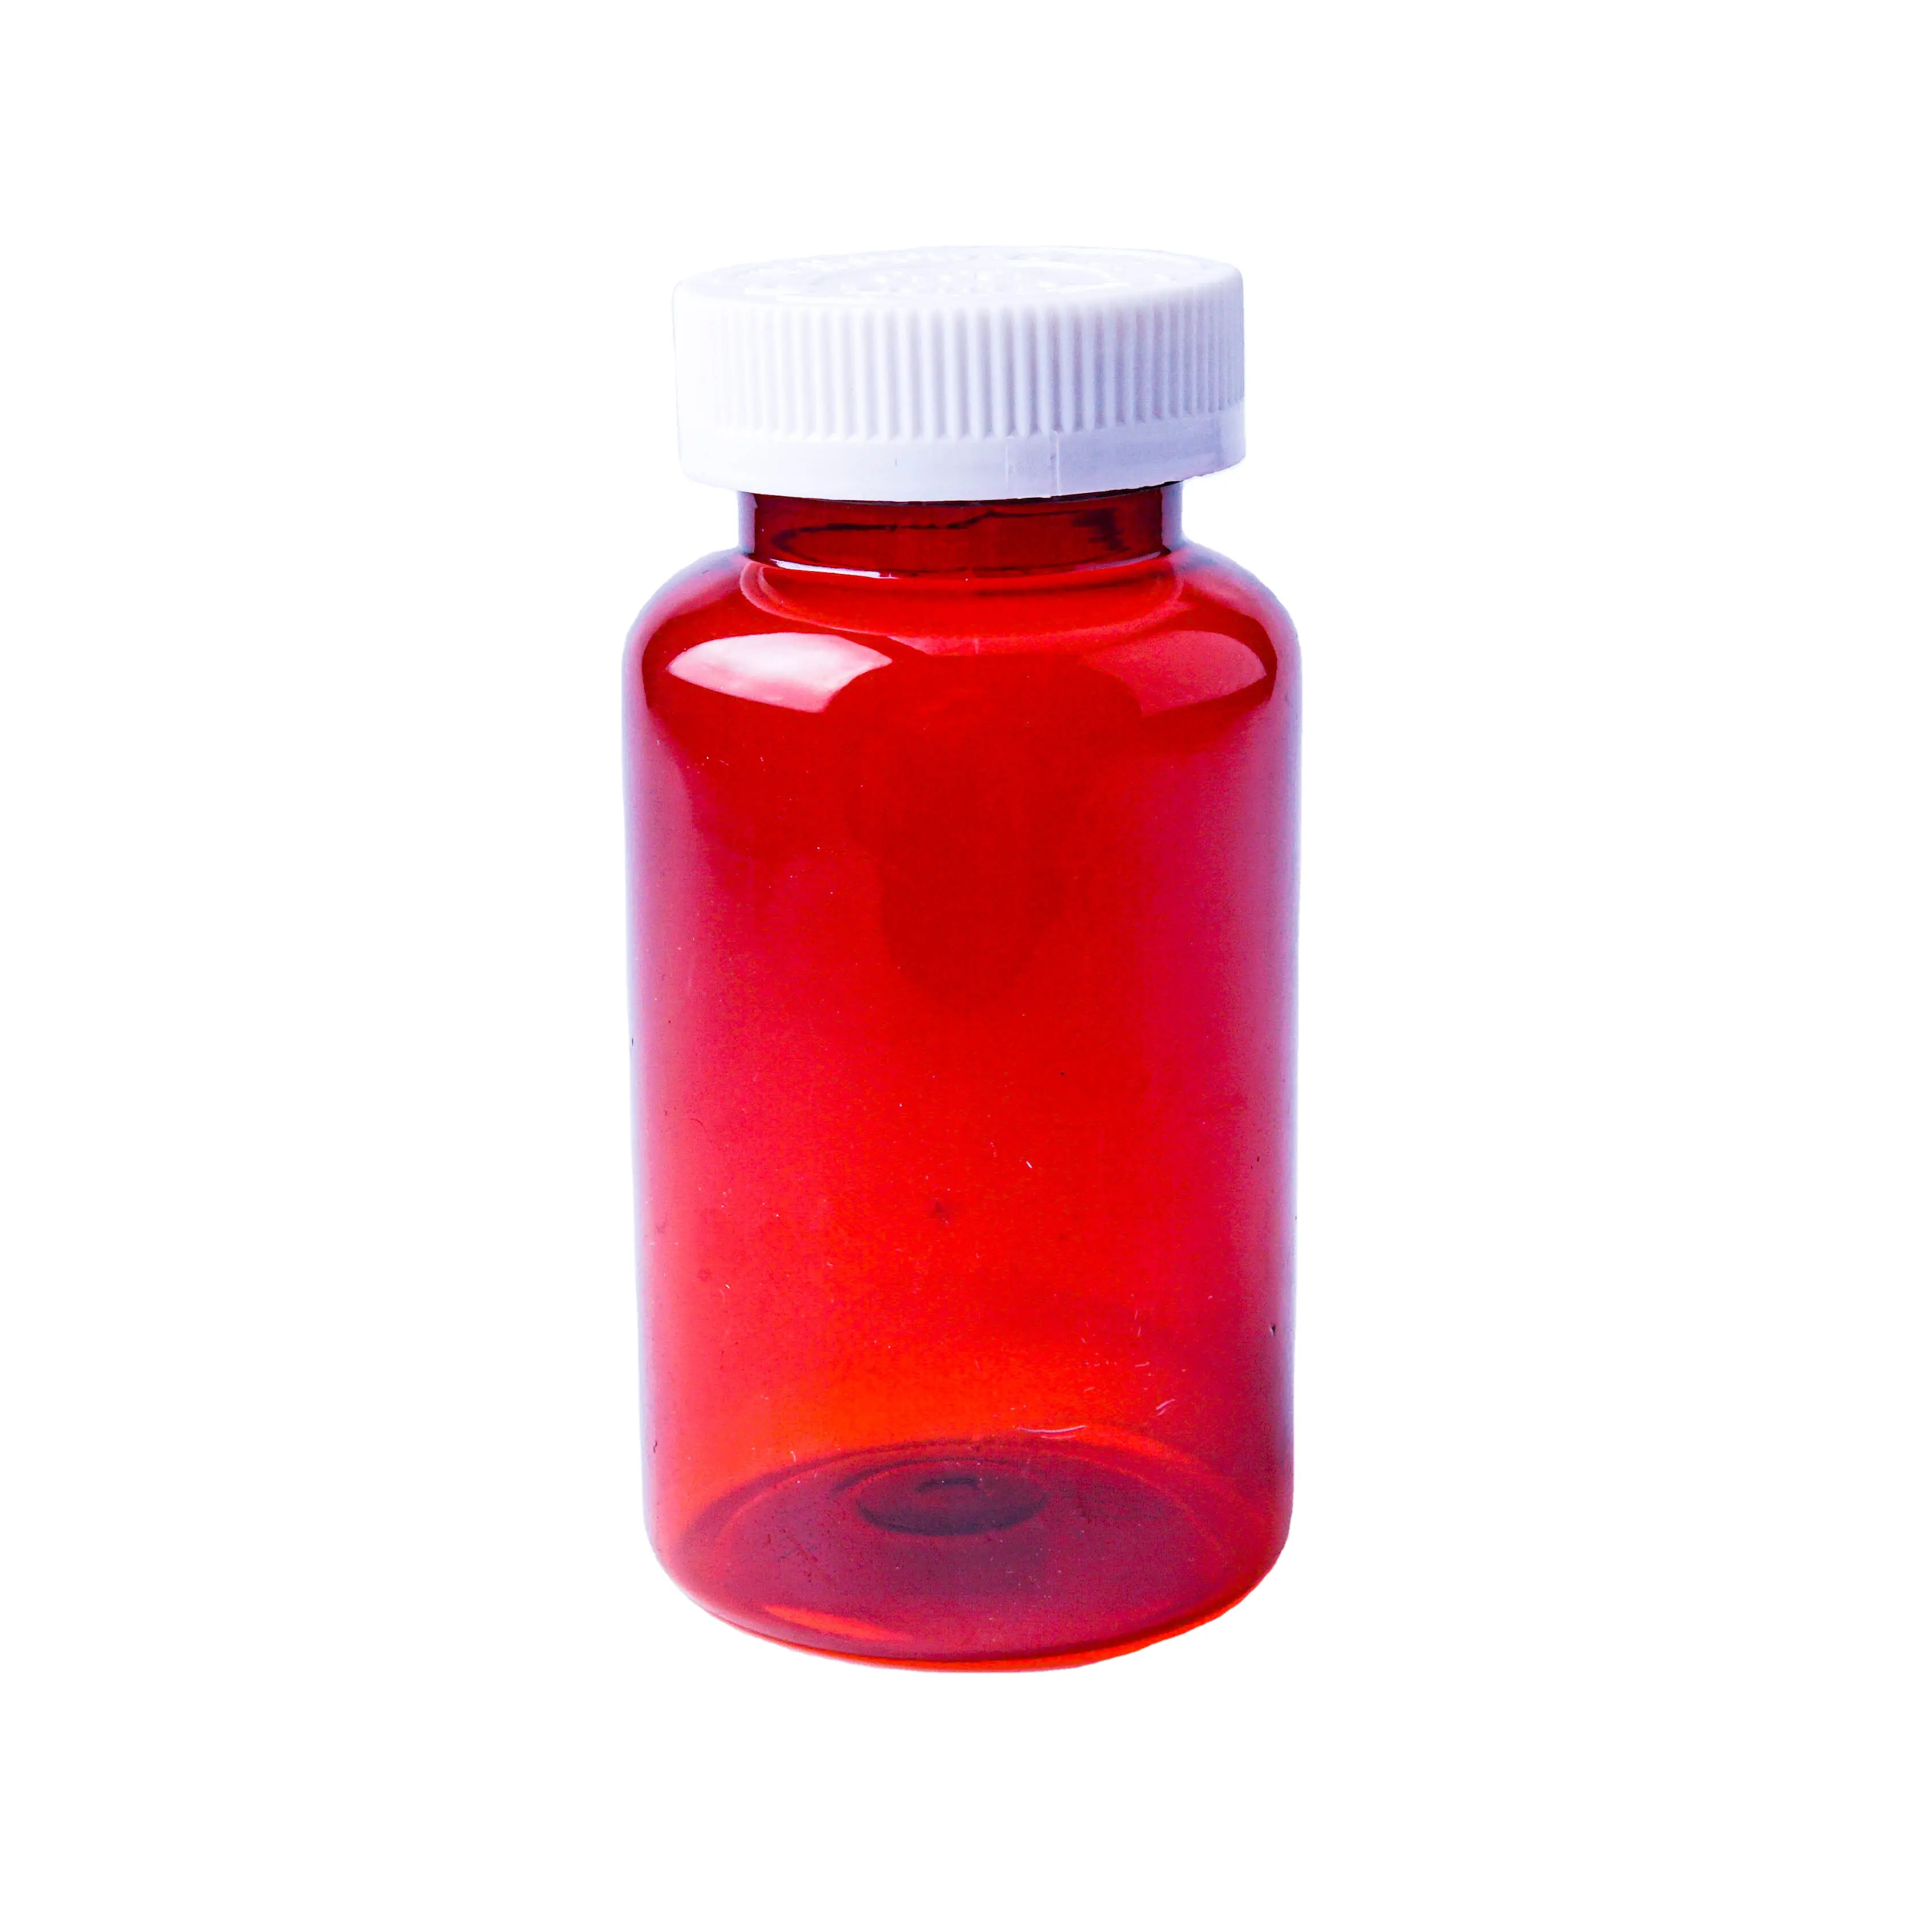 Benutzer definierte 275cc rot Kunststoff Haustier leere Bernstein Medizin Kapsel Flasche mit kinder sicherer Kappe für Kapsel Medizin Pille Verpackung